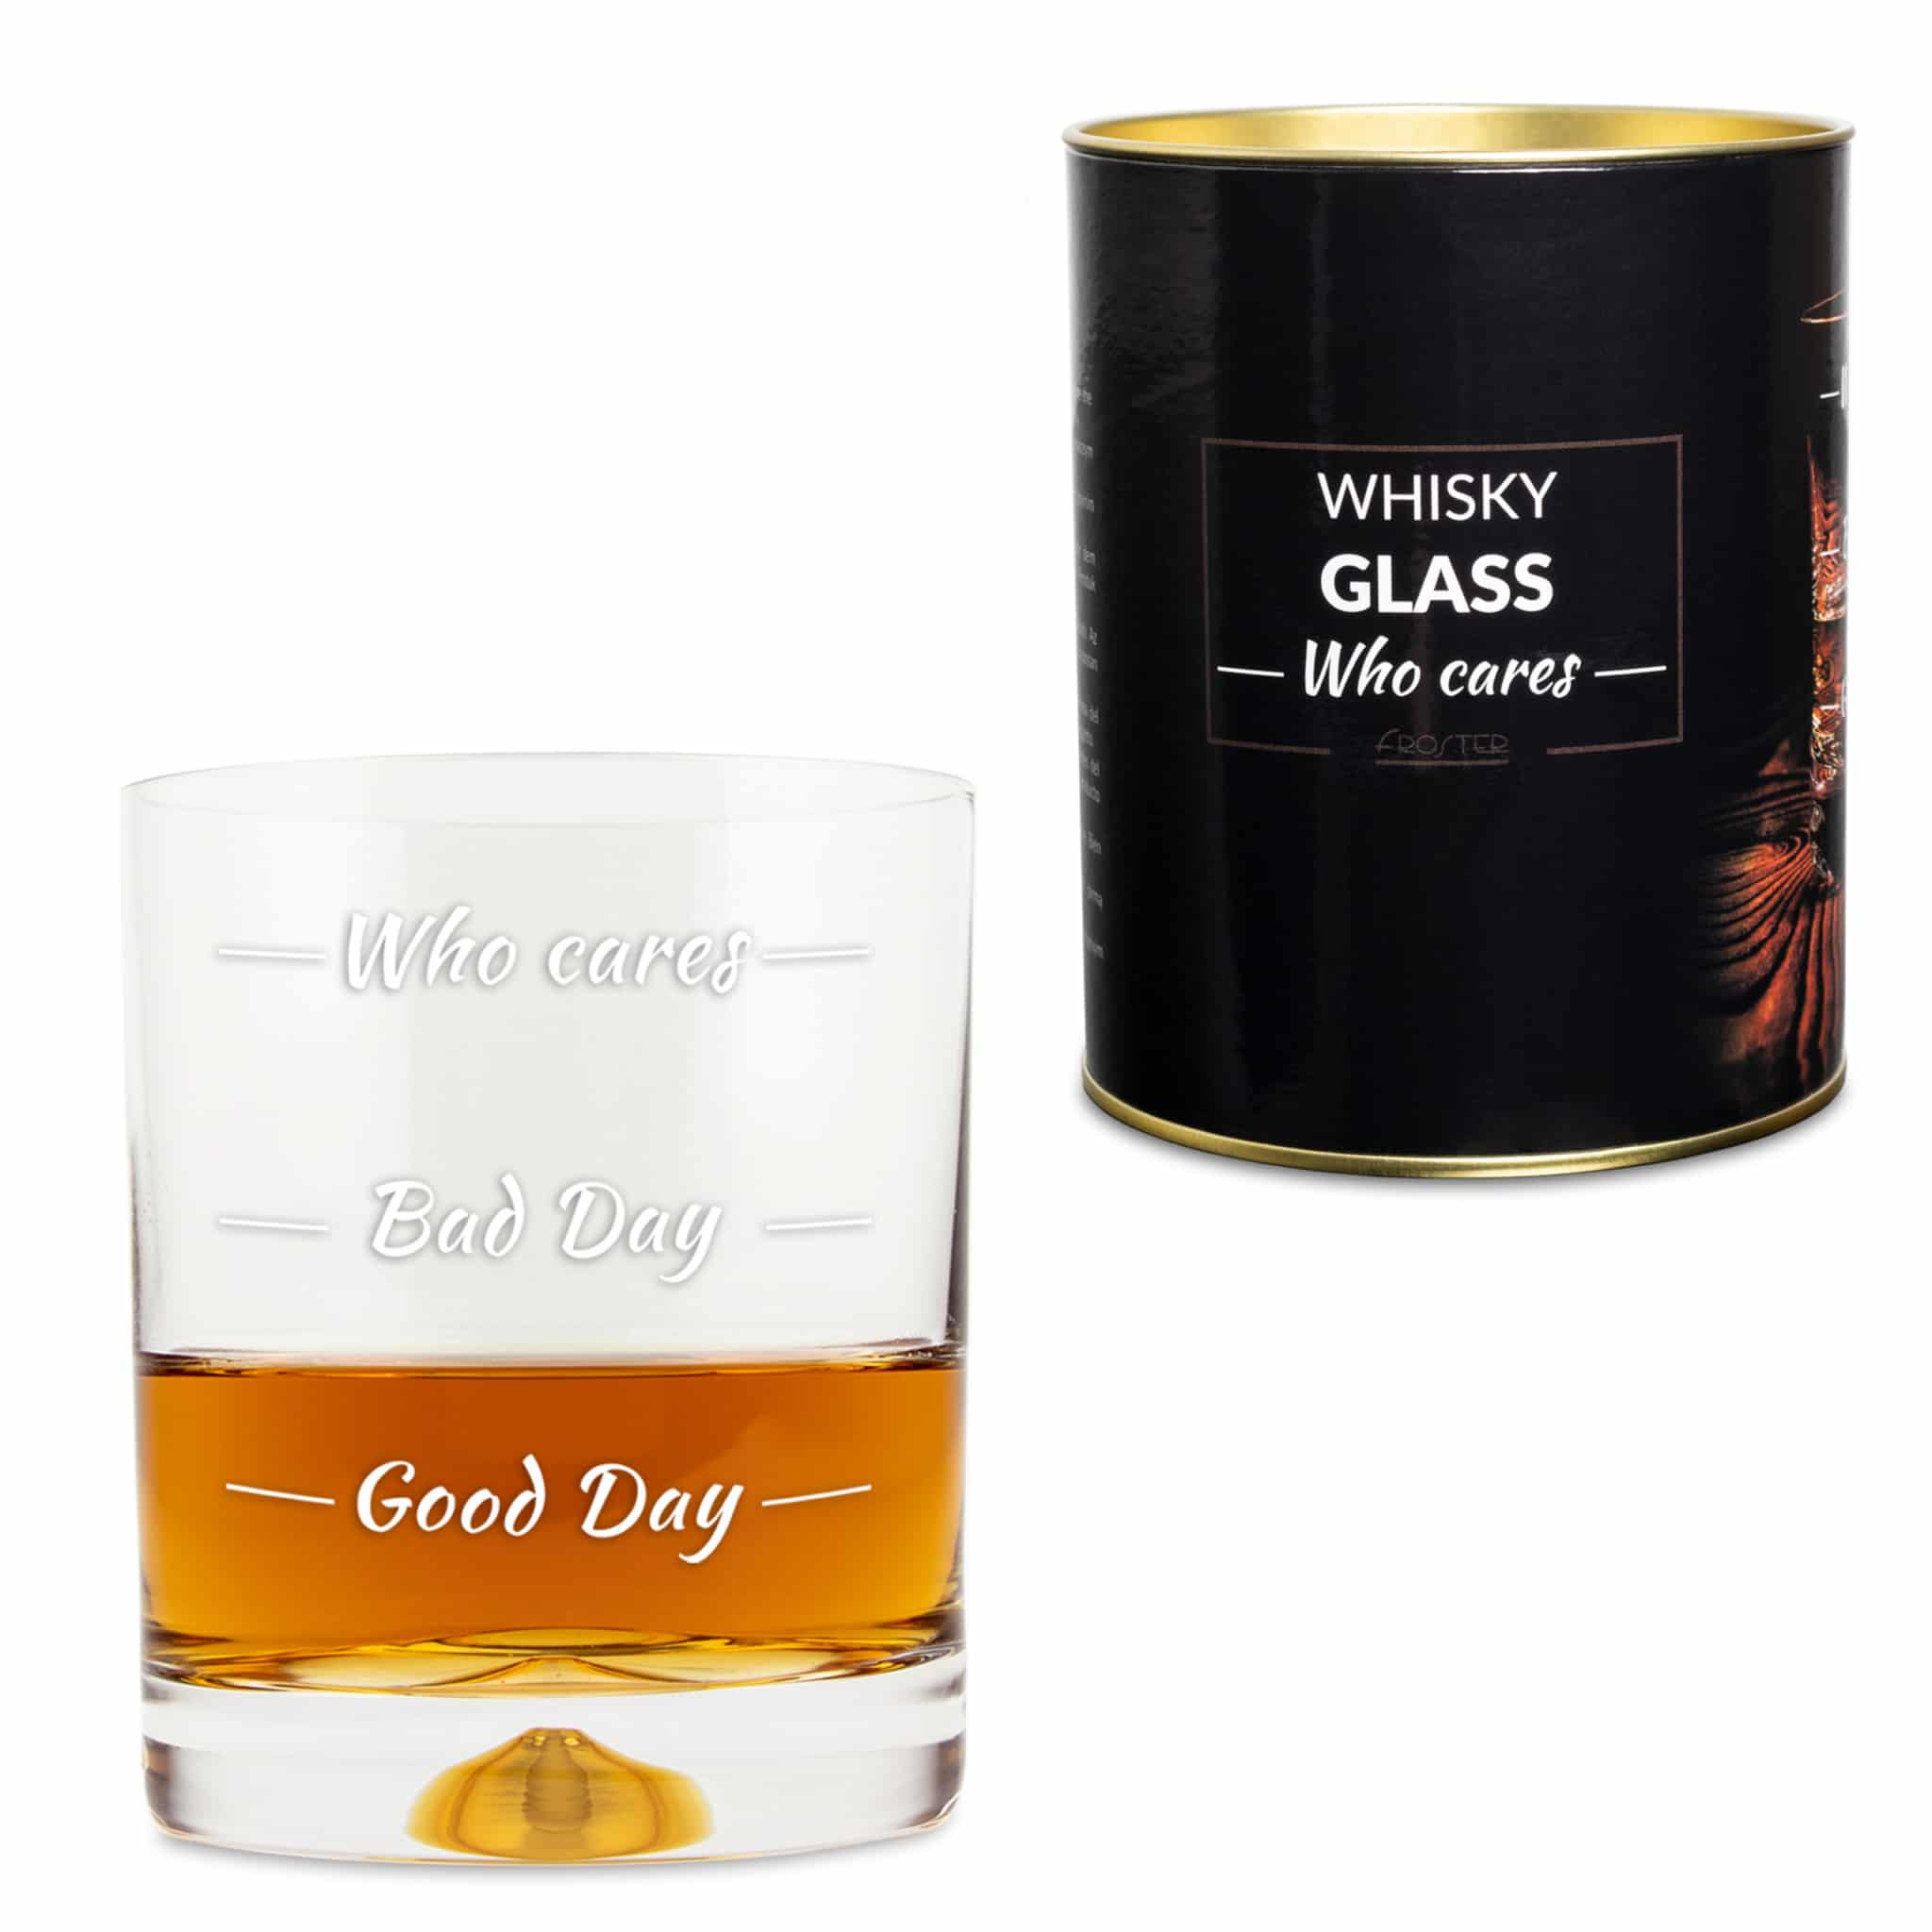 Szklanka do whisky “Who cares” Prezenty Szalony.pl - Sklep imprezowy